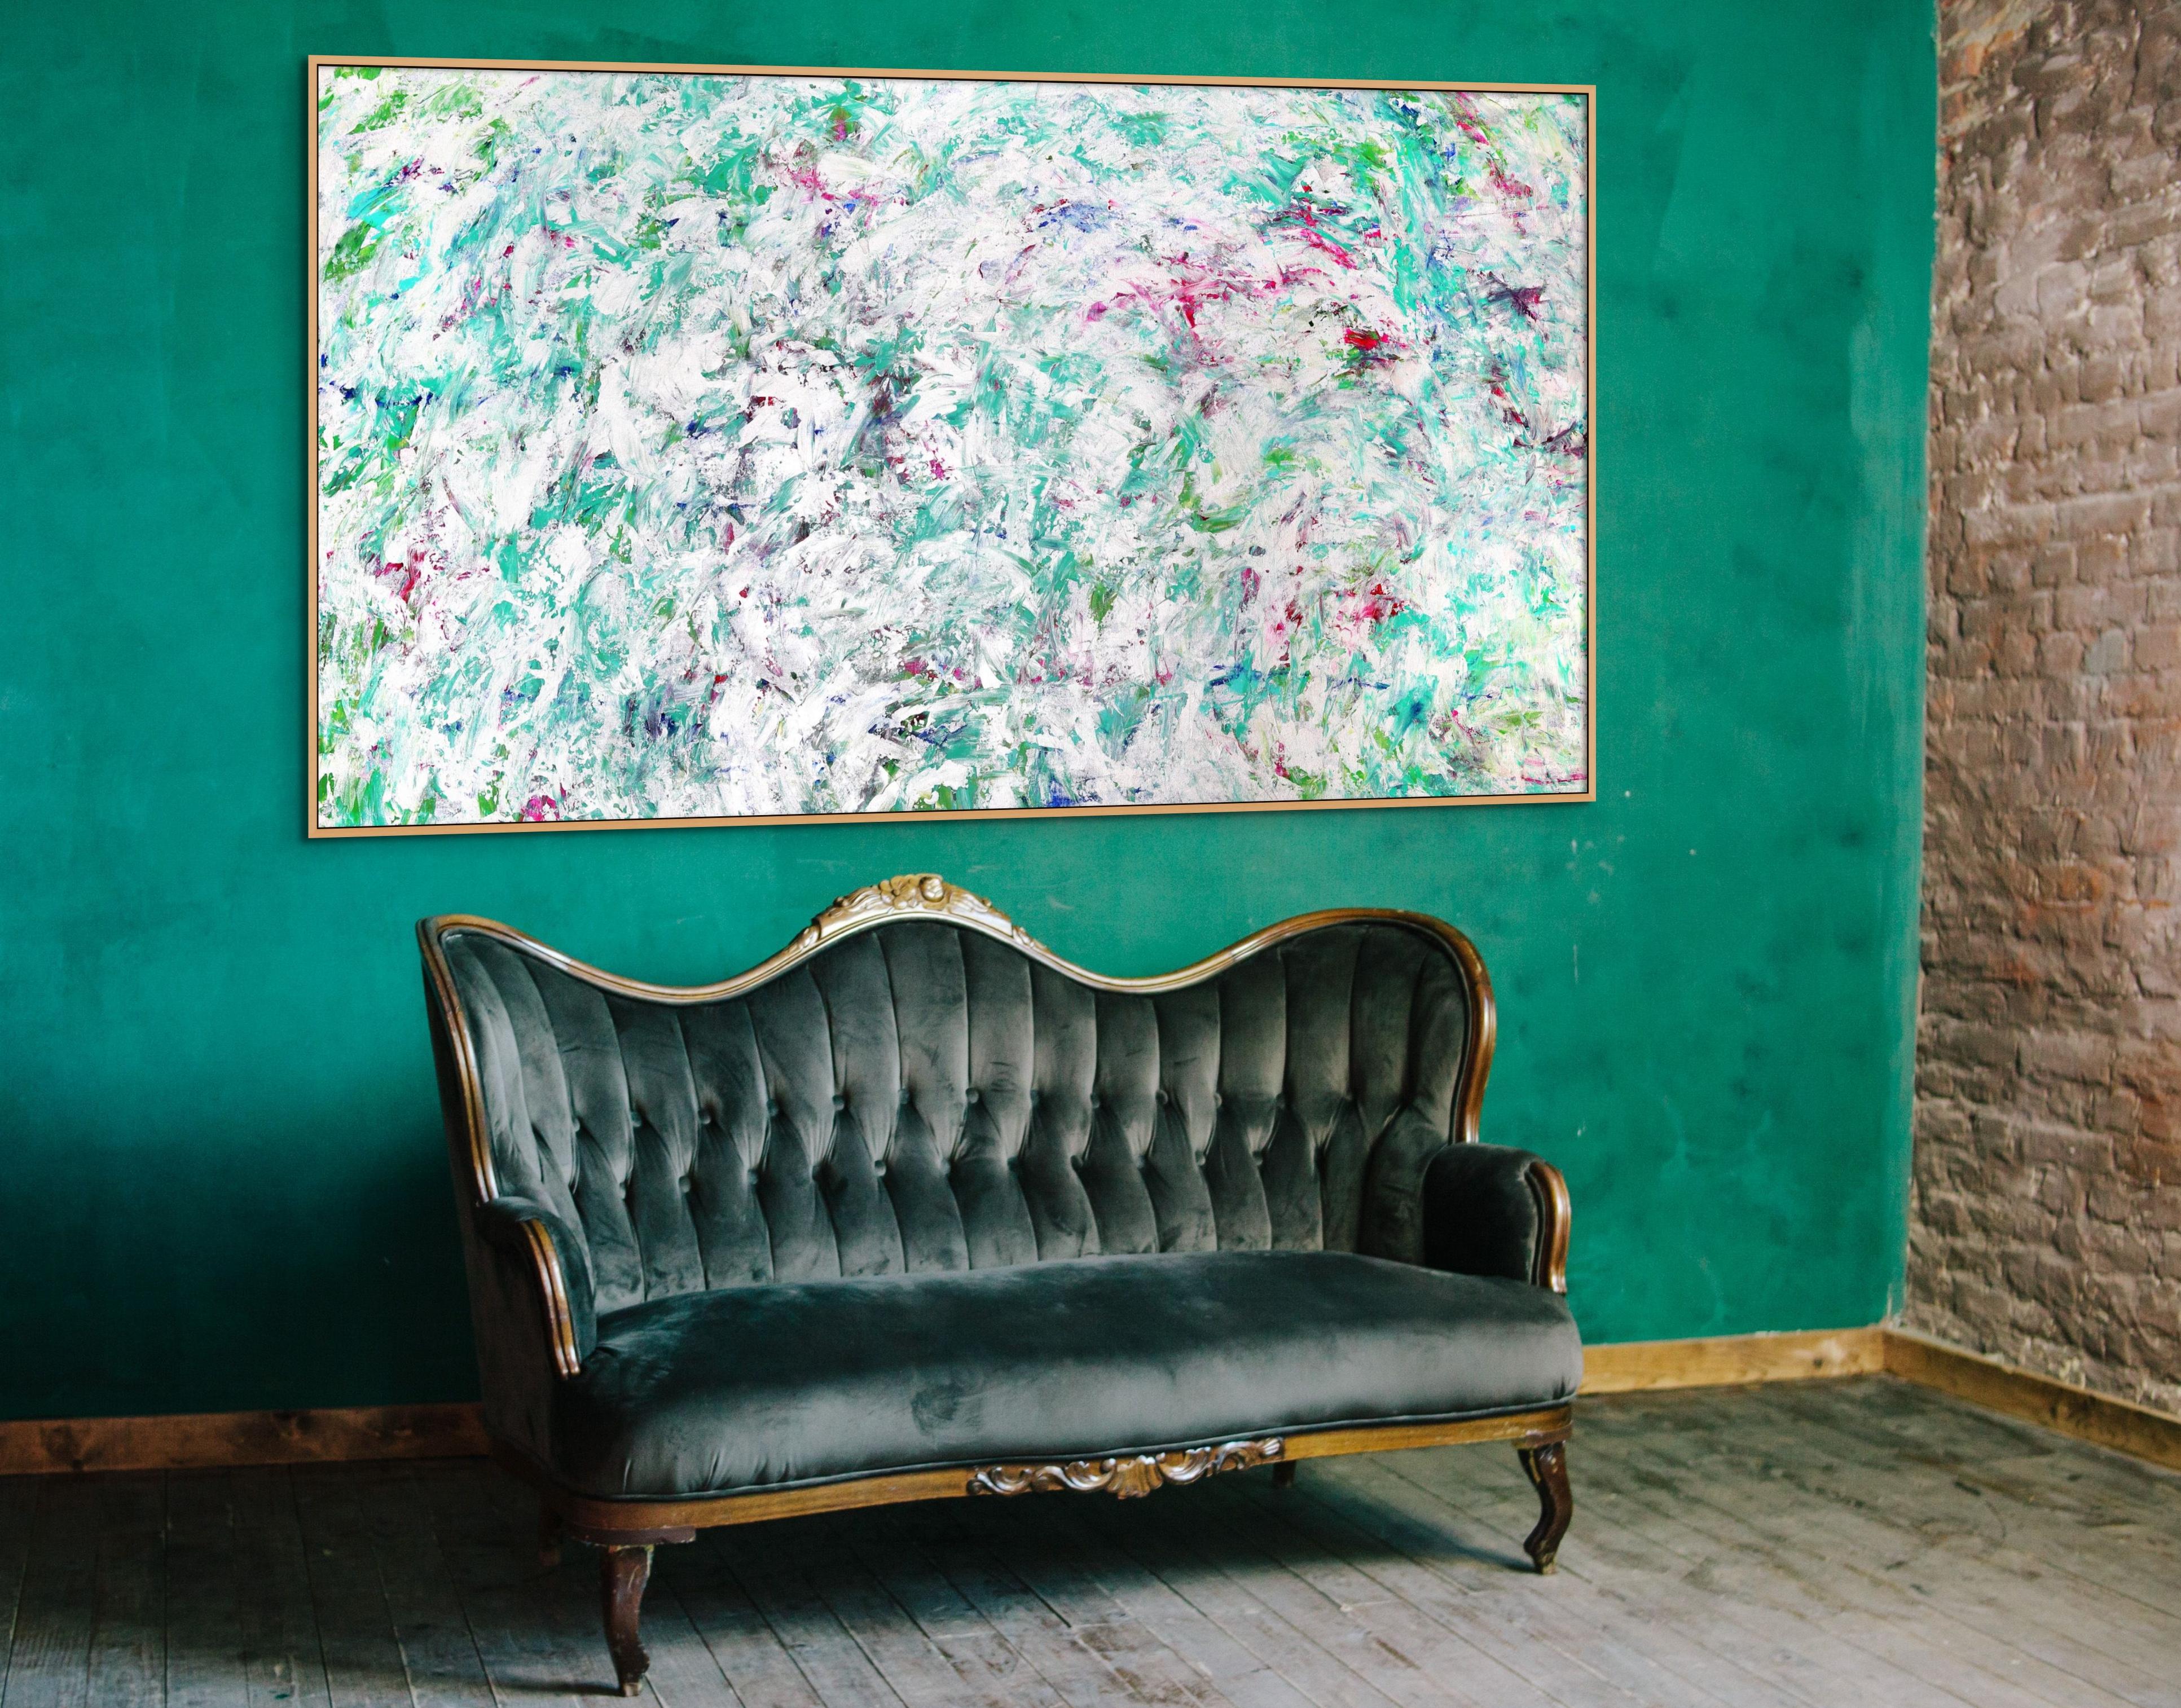 Perlenparadies (Abstrakter Expressionismus), Painting, von Estelle Asmodelle